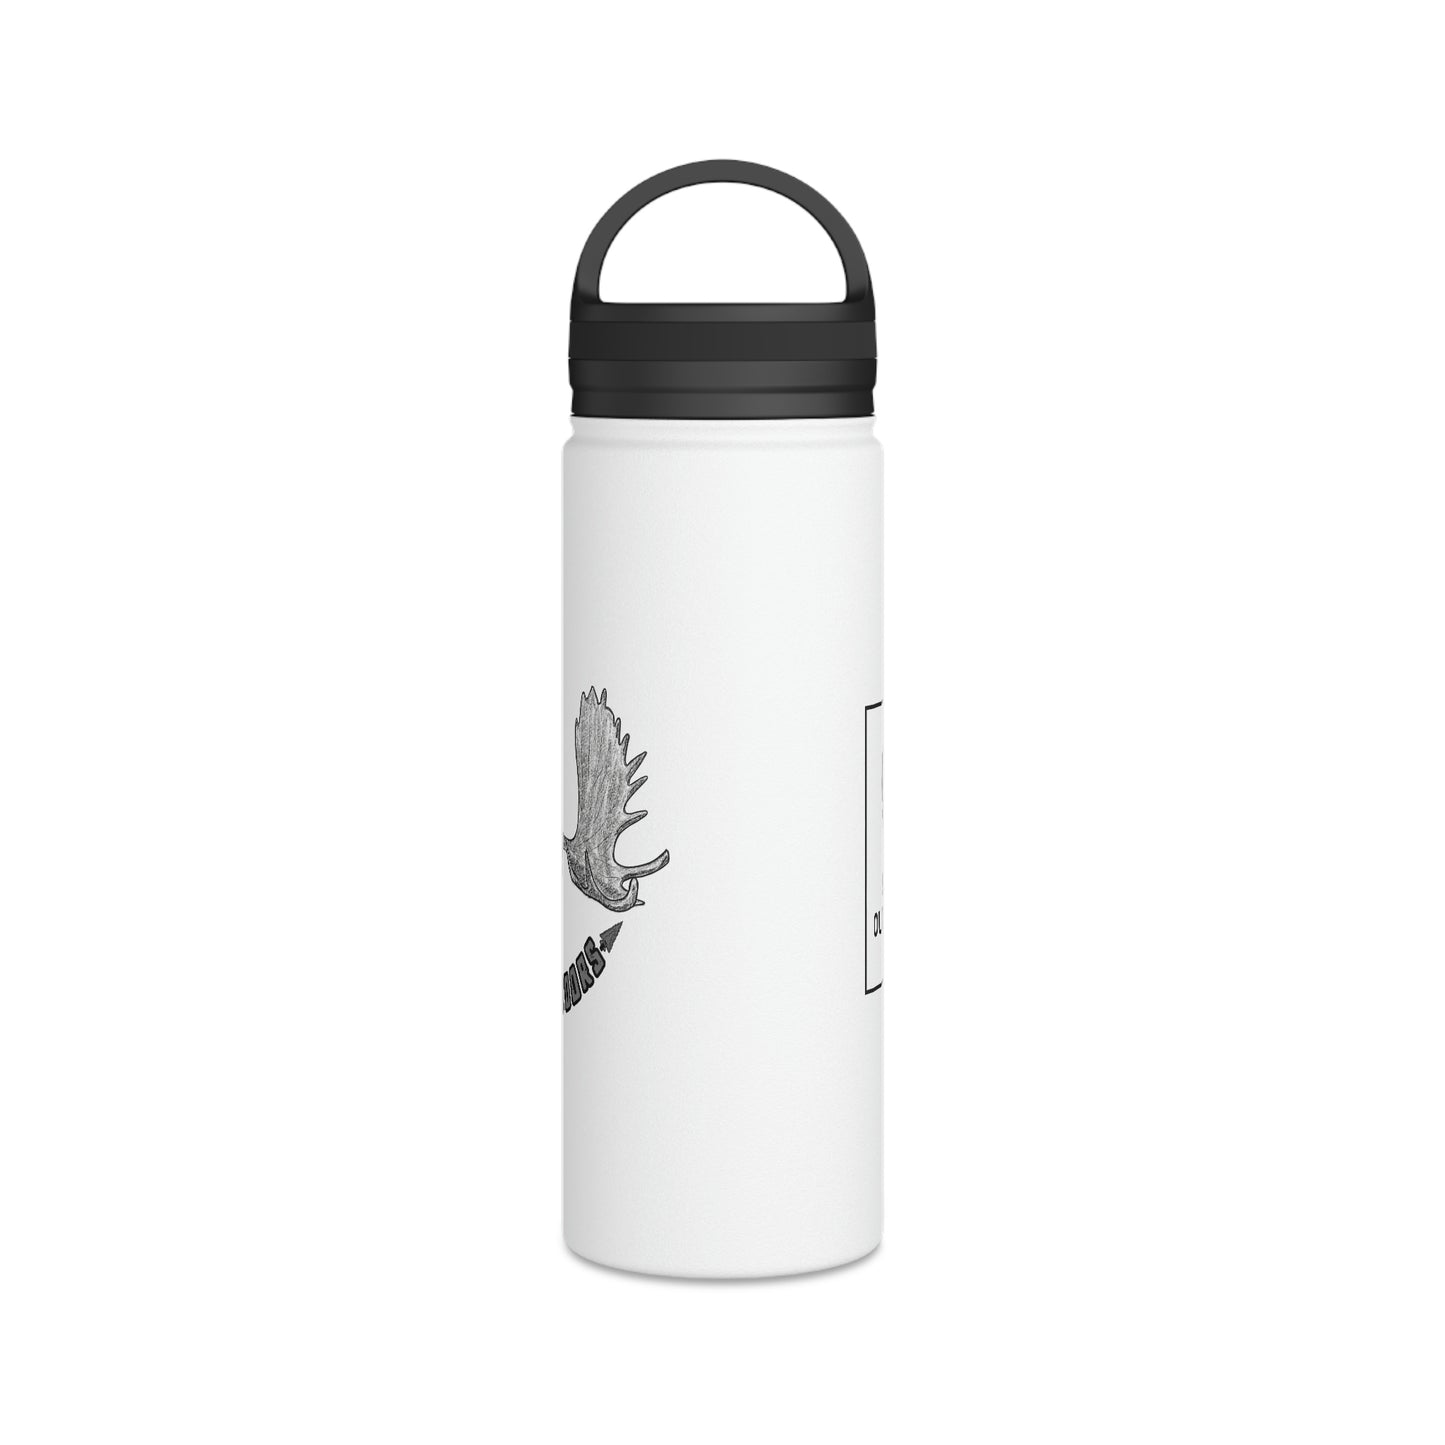 Moose Stainless Steel Water Bottle, Handle Lid - 907Outdoors